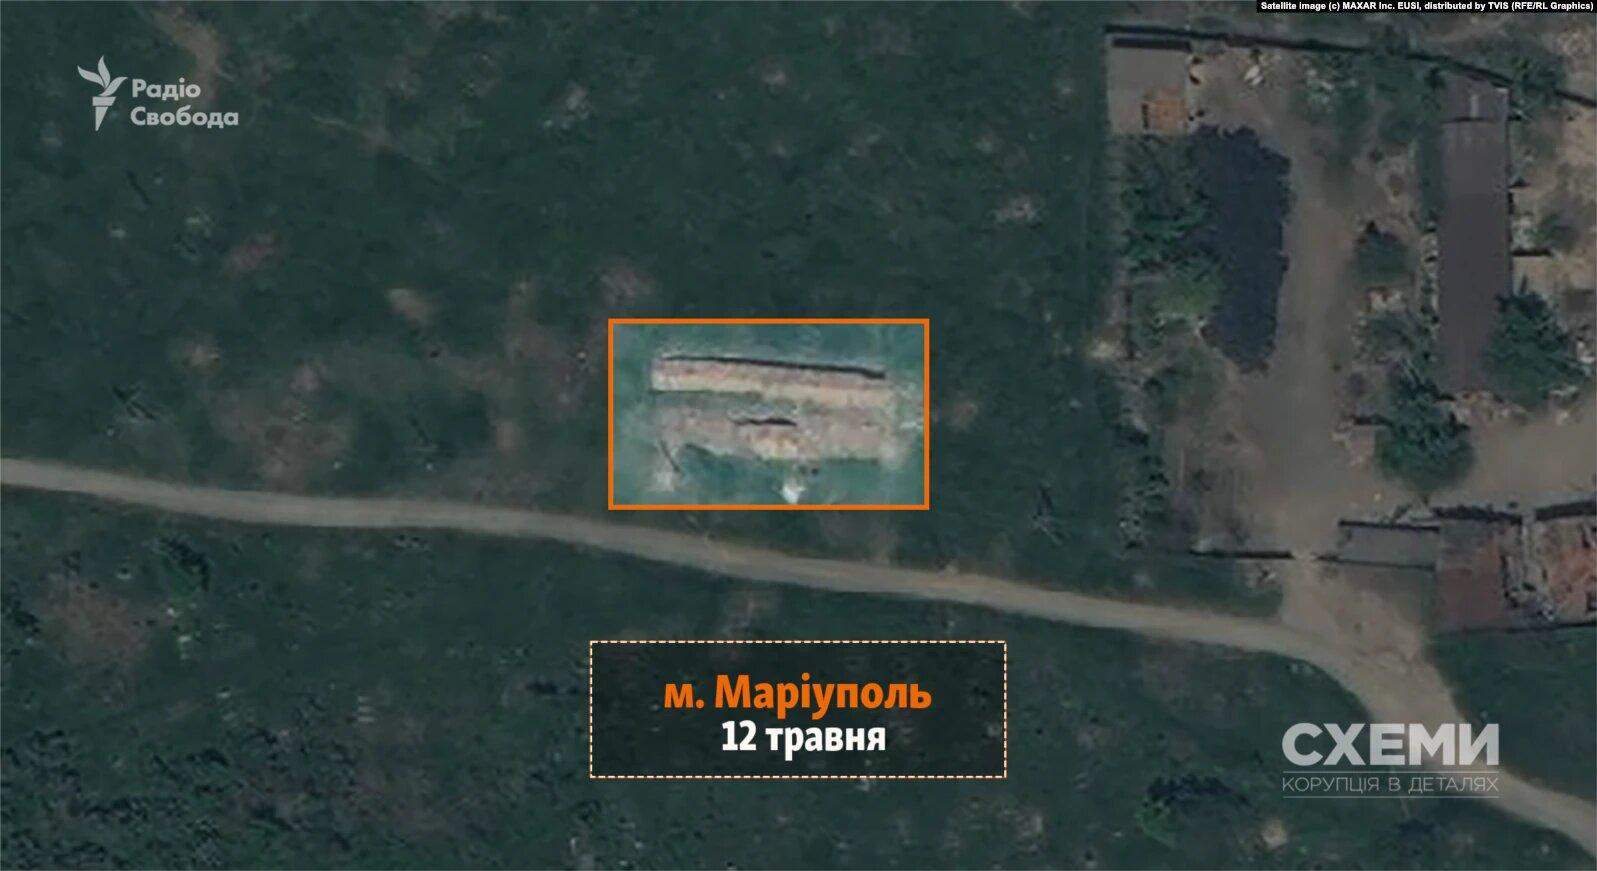 Фото масового поховання  з супутника за 12 травня